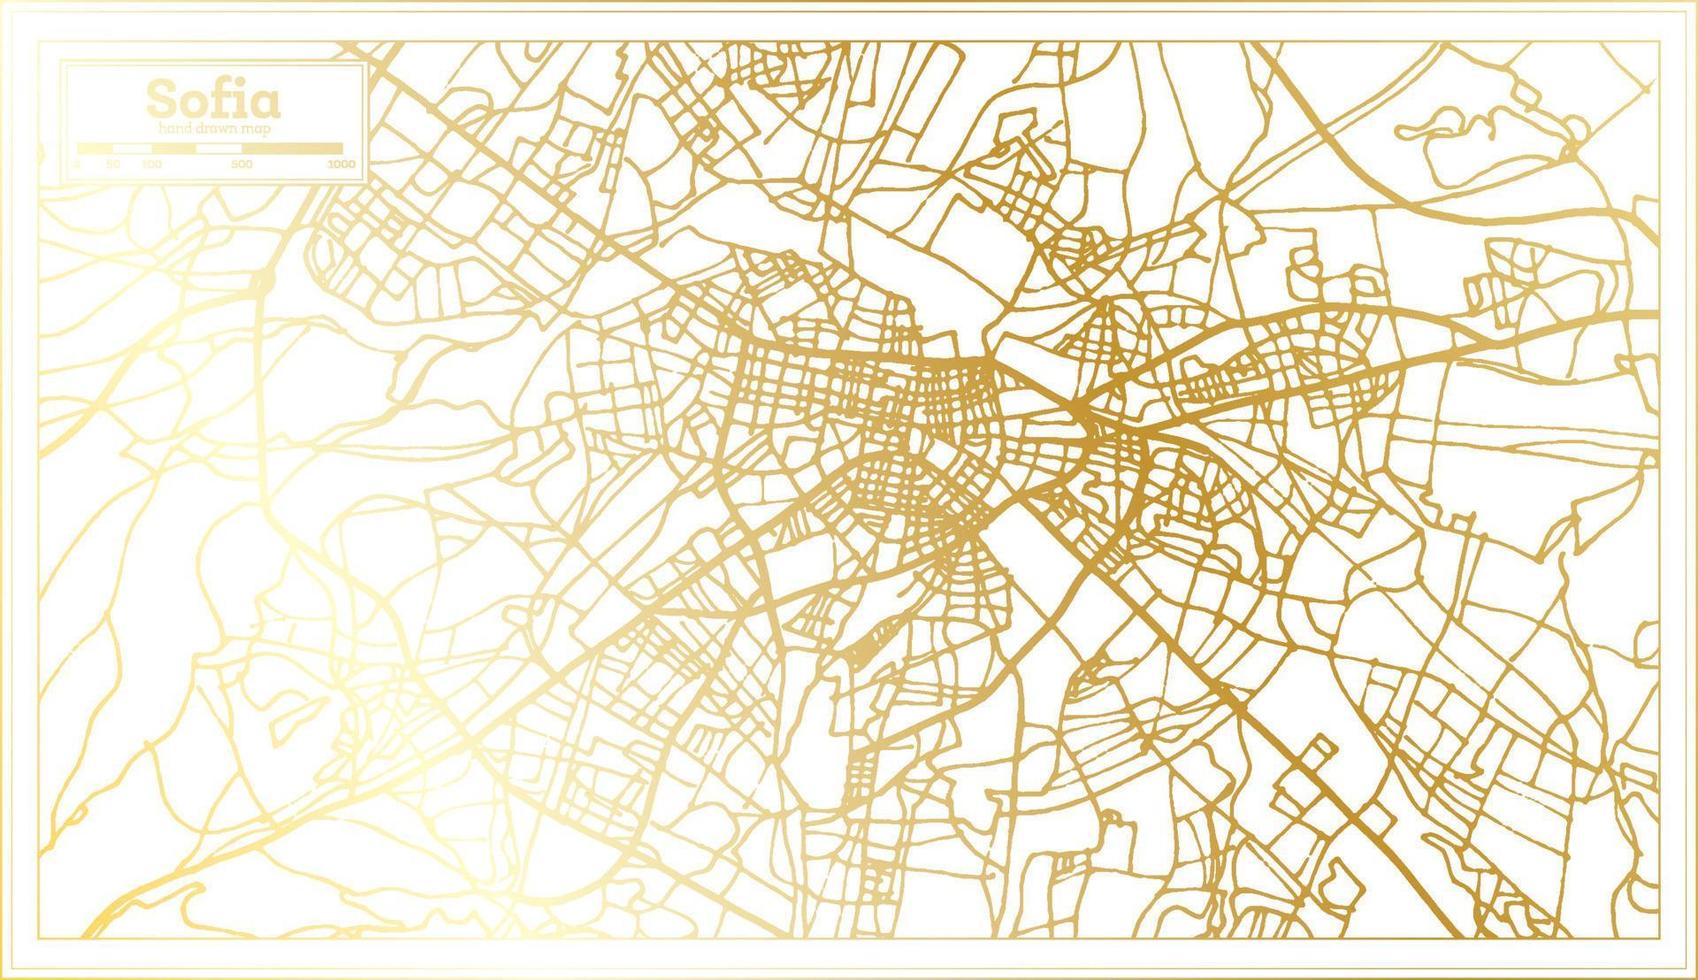 mapa de la ciudad de sofia bulgaria en estilo retro en color dorado. esquema del mapa. vector